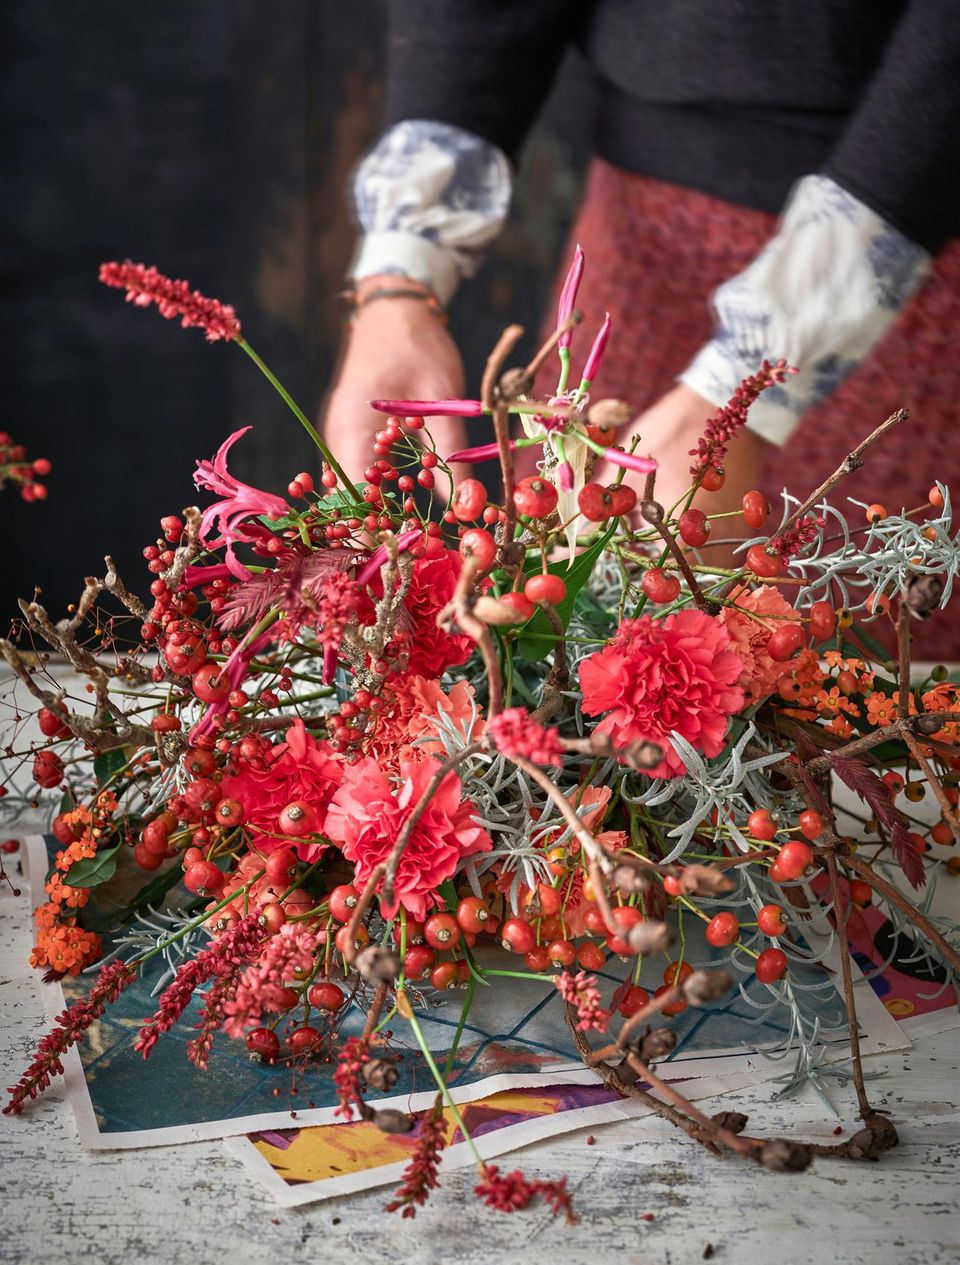 Ein roter Strauß aus Ästen, Beeren und Blüten wird zusammengebunden